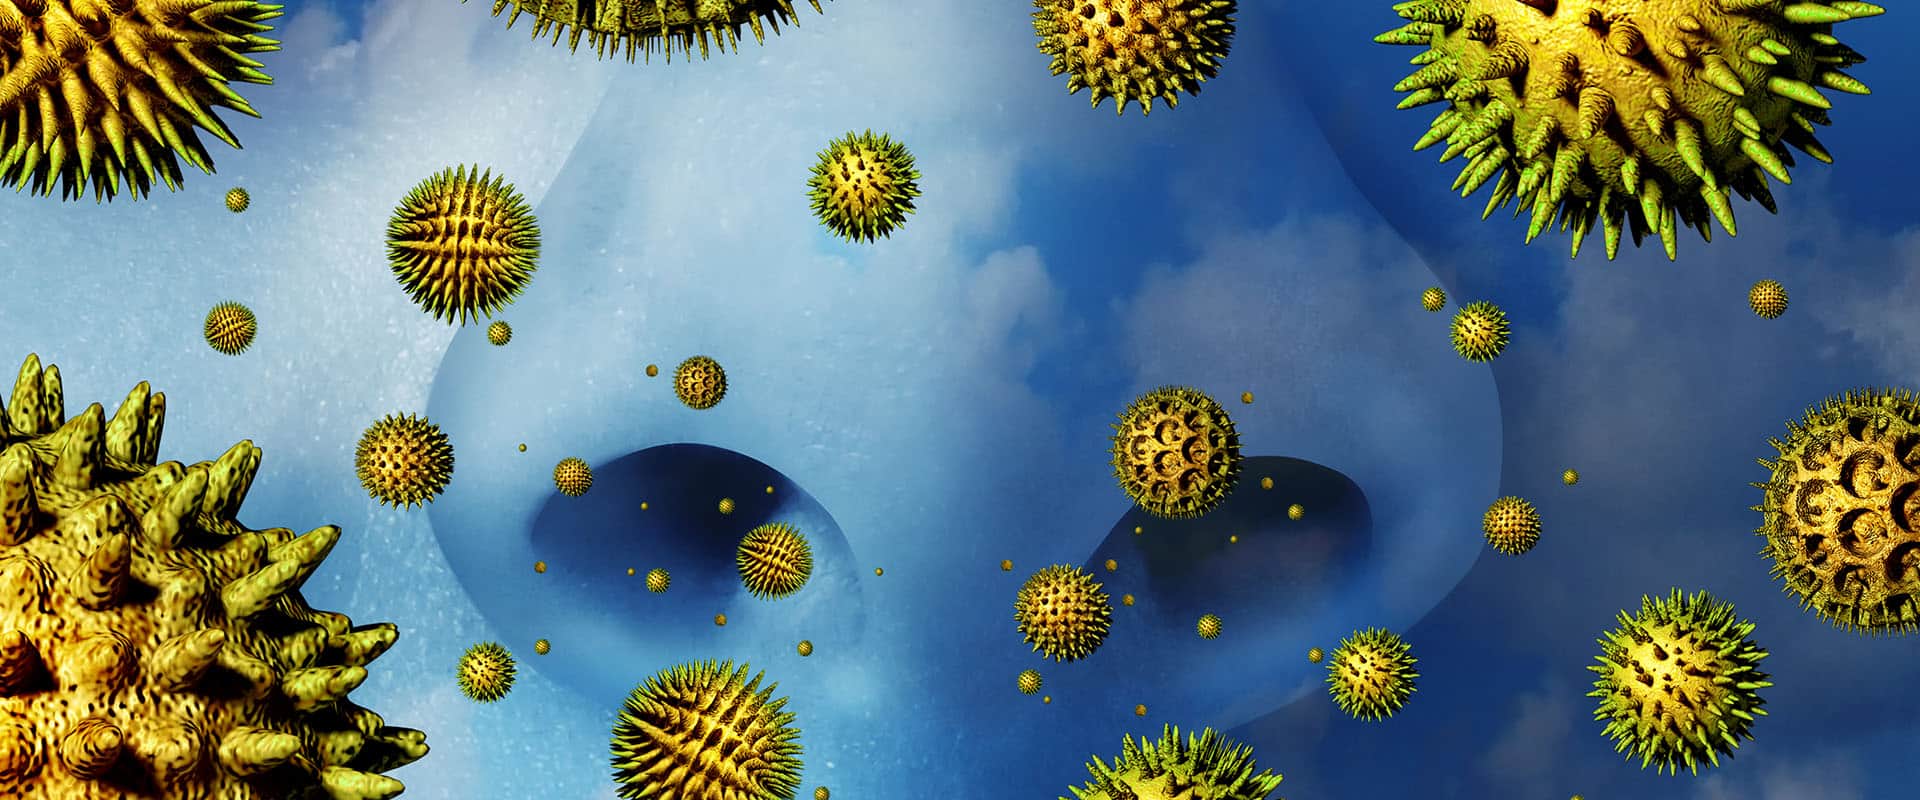 Гены пыльцы. Пыльца аллерген. Пыльца деревьев. Пыльцевые аллергены. Аллергены под микроскопом.